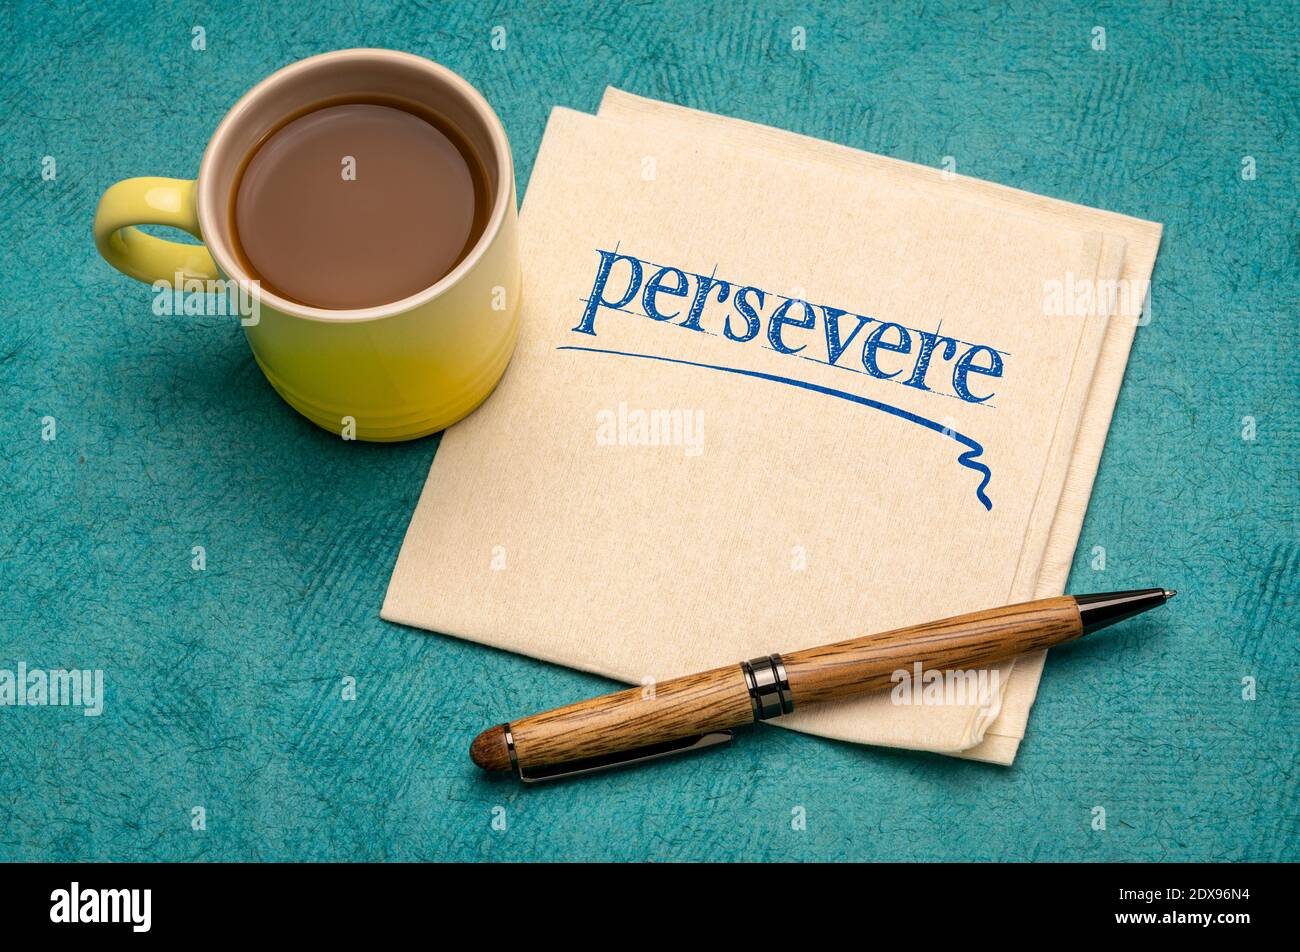 Beharren Sie Motivationsnotiz - Handschrift auf einer Serviette mit einer Tasse Kaffee, Ausdauer und Entschlossenheit Konzept Stockfoto